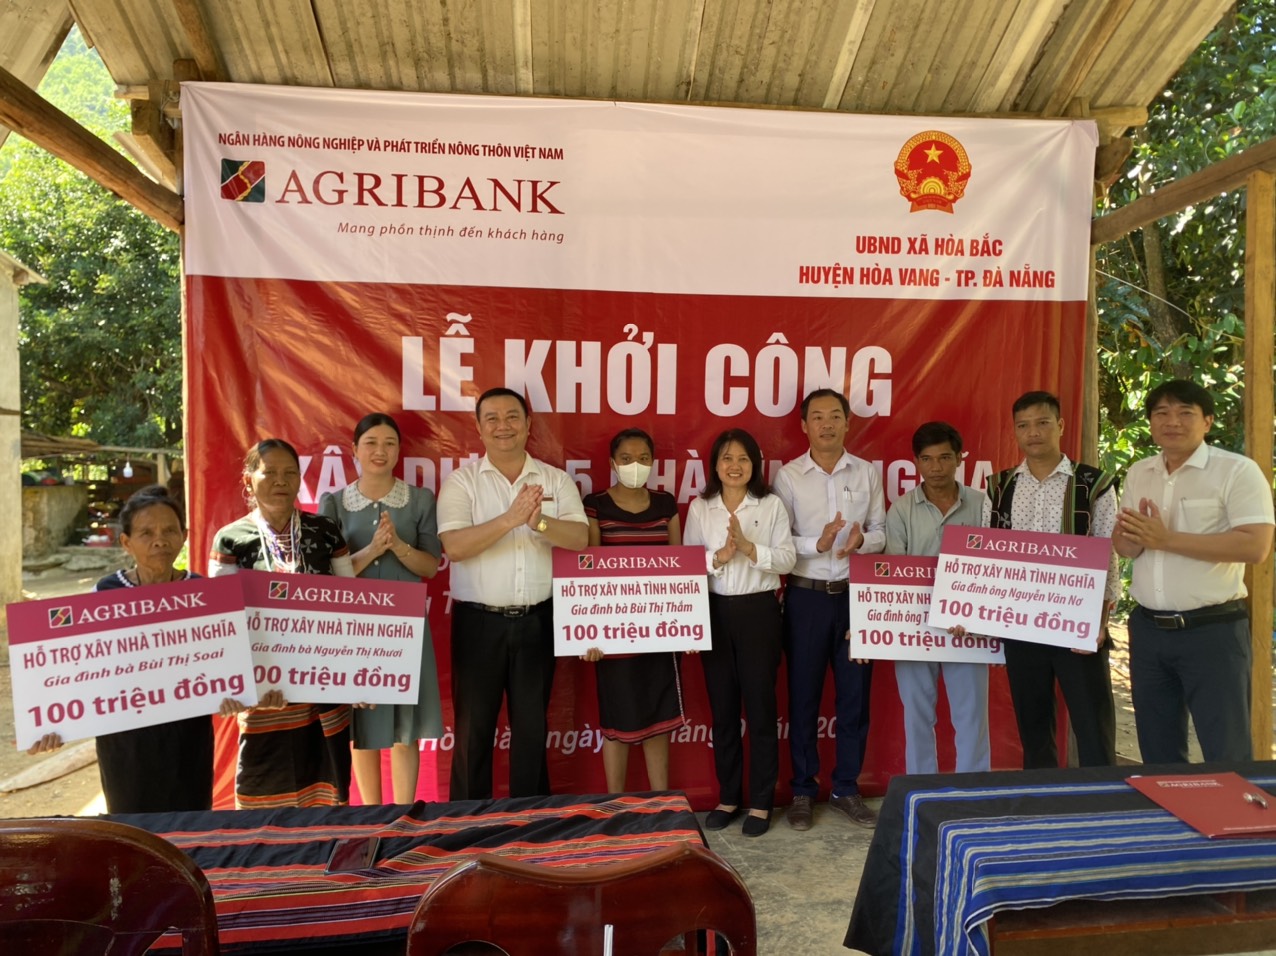 Đà Nẵng: Agribank tài trợ 500 triệu đồng xây dựng 5 nhà tình nghĩa cho người đồng bào Cơ Tu - Ảnh 3.